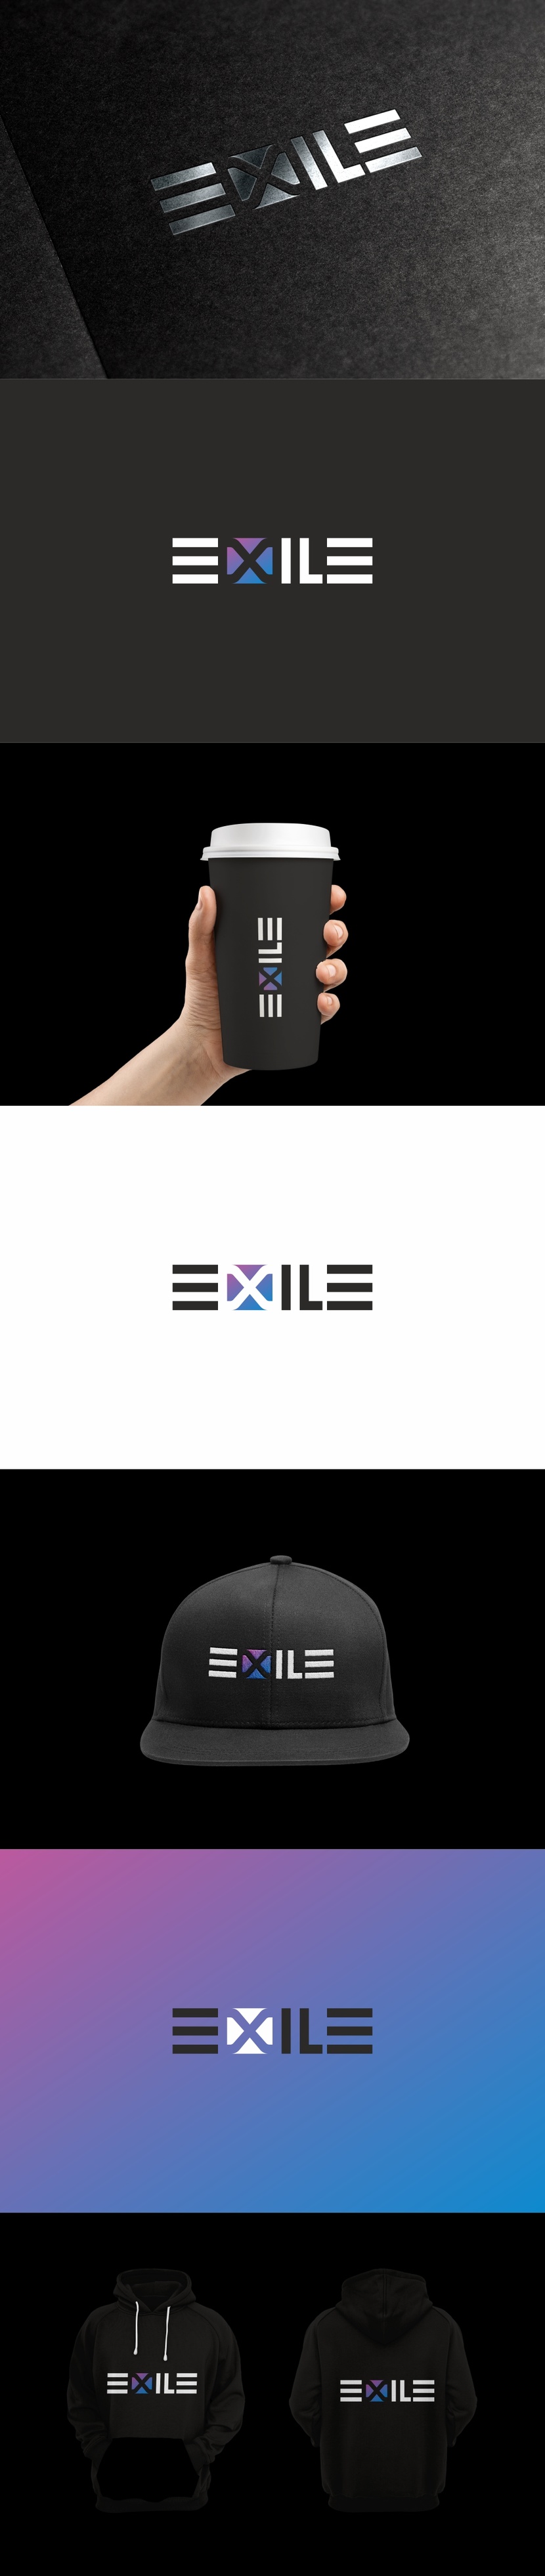 Разработка логотипа и фирменного стиля EXILE  -  автор Андрей Мартынович